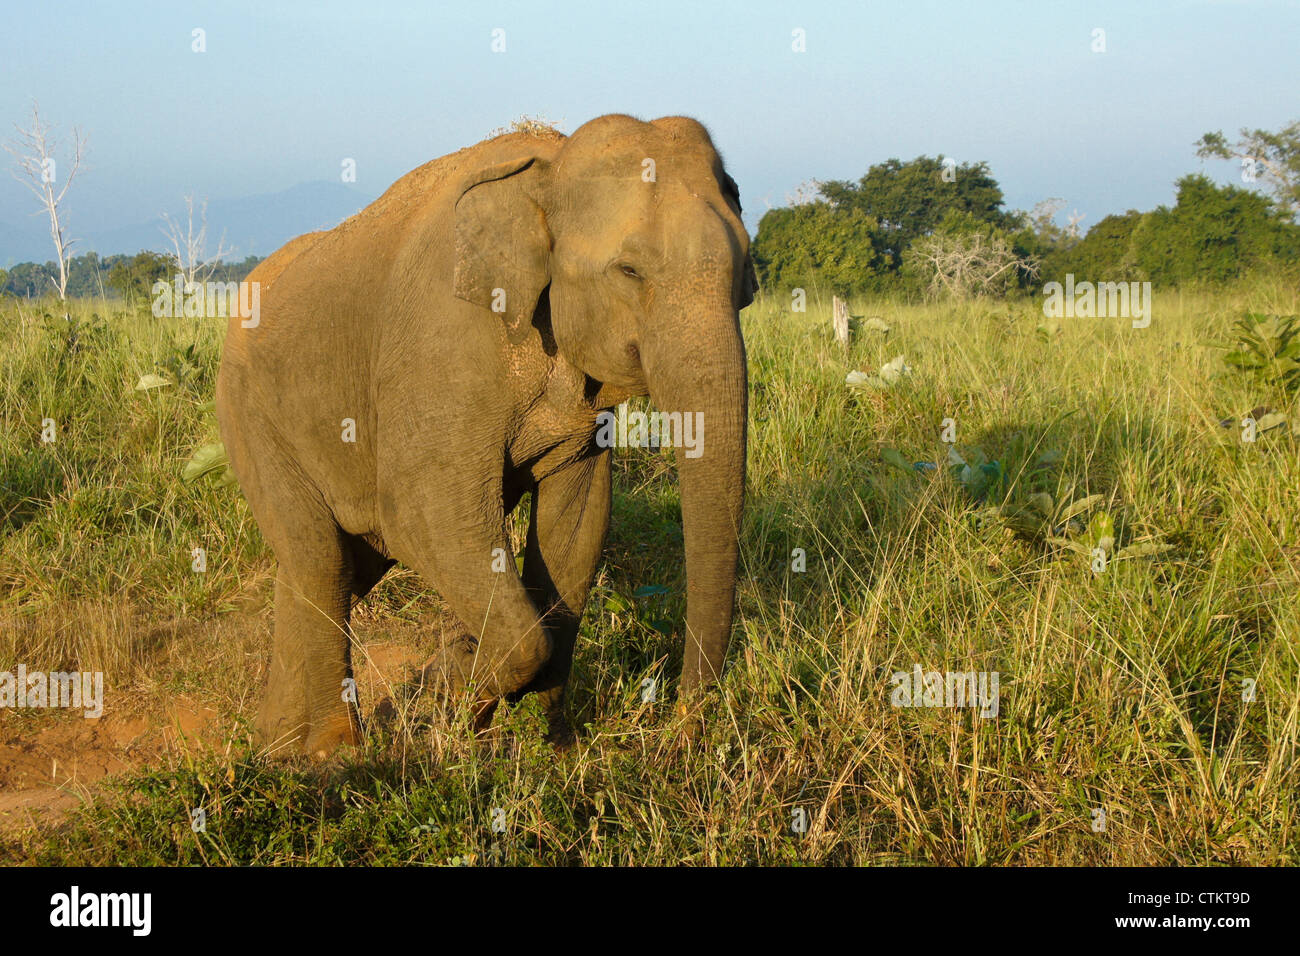 Asian elephant walking, Uda Walawe National Park, Sri Lanka Stock Photo